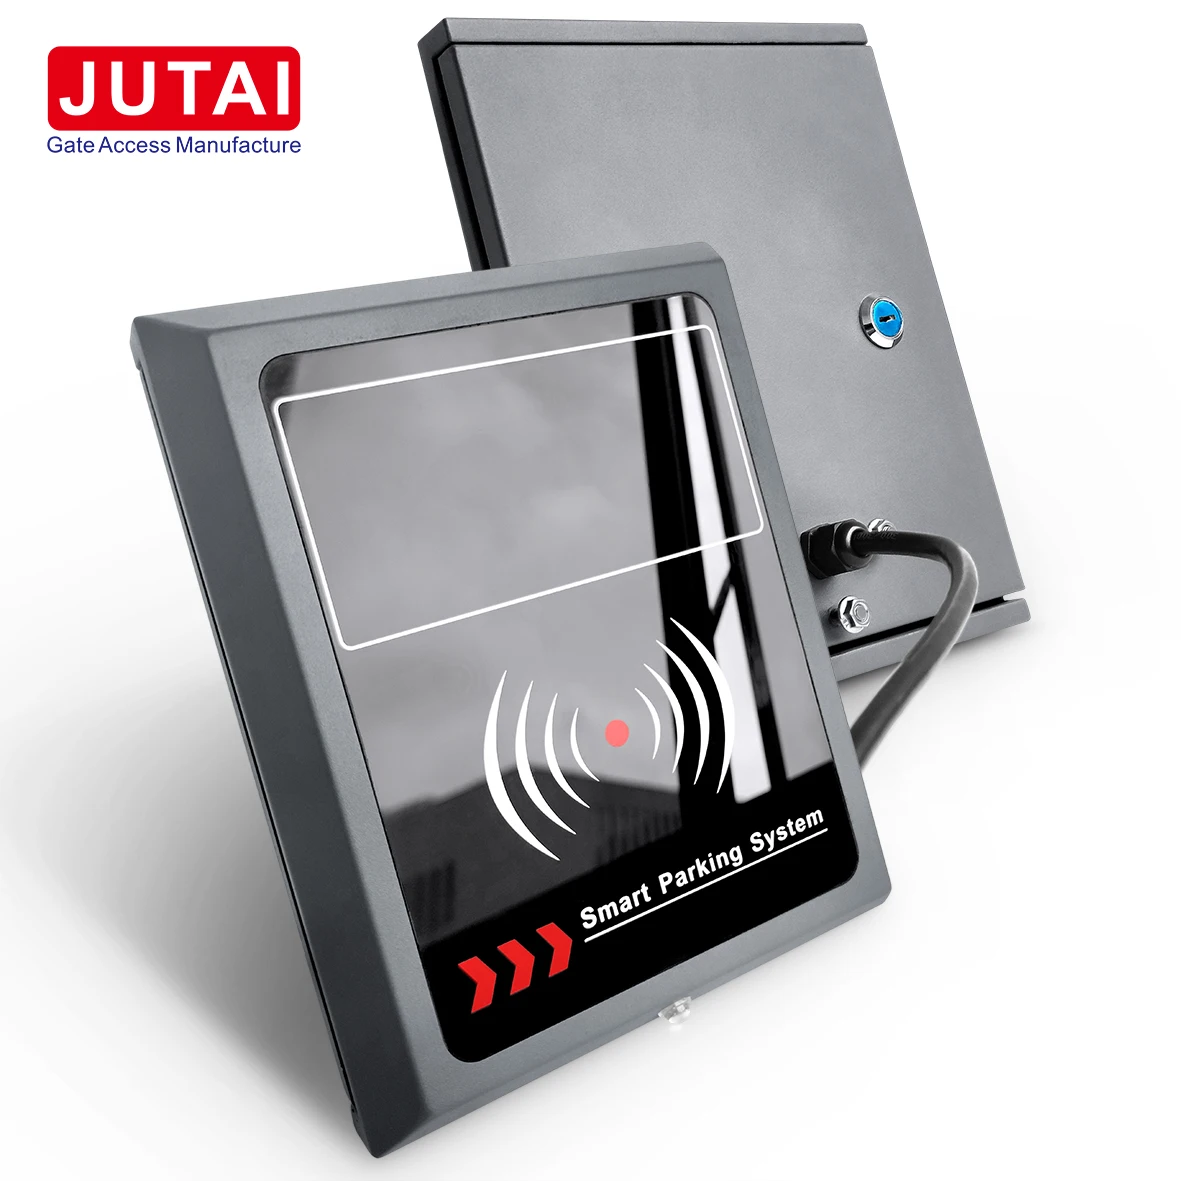 Il lettore attivo RFID UHF a lungo raggio JUTAI include tag attivi